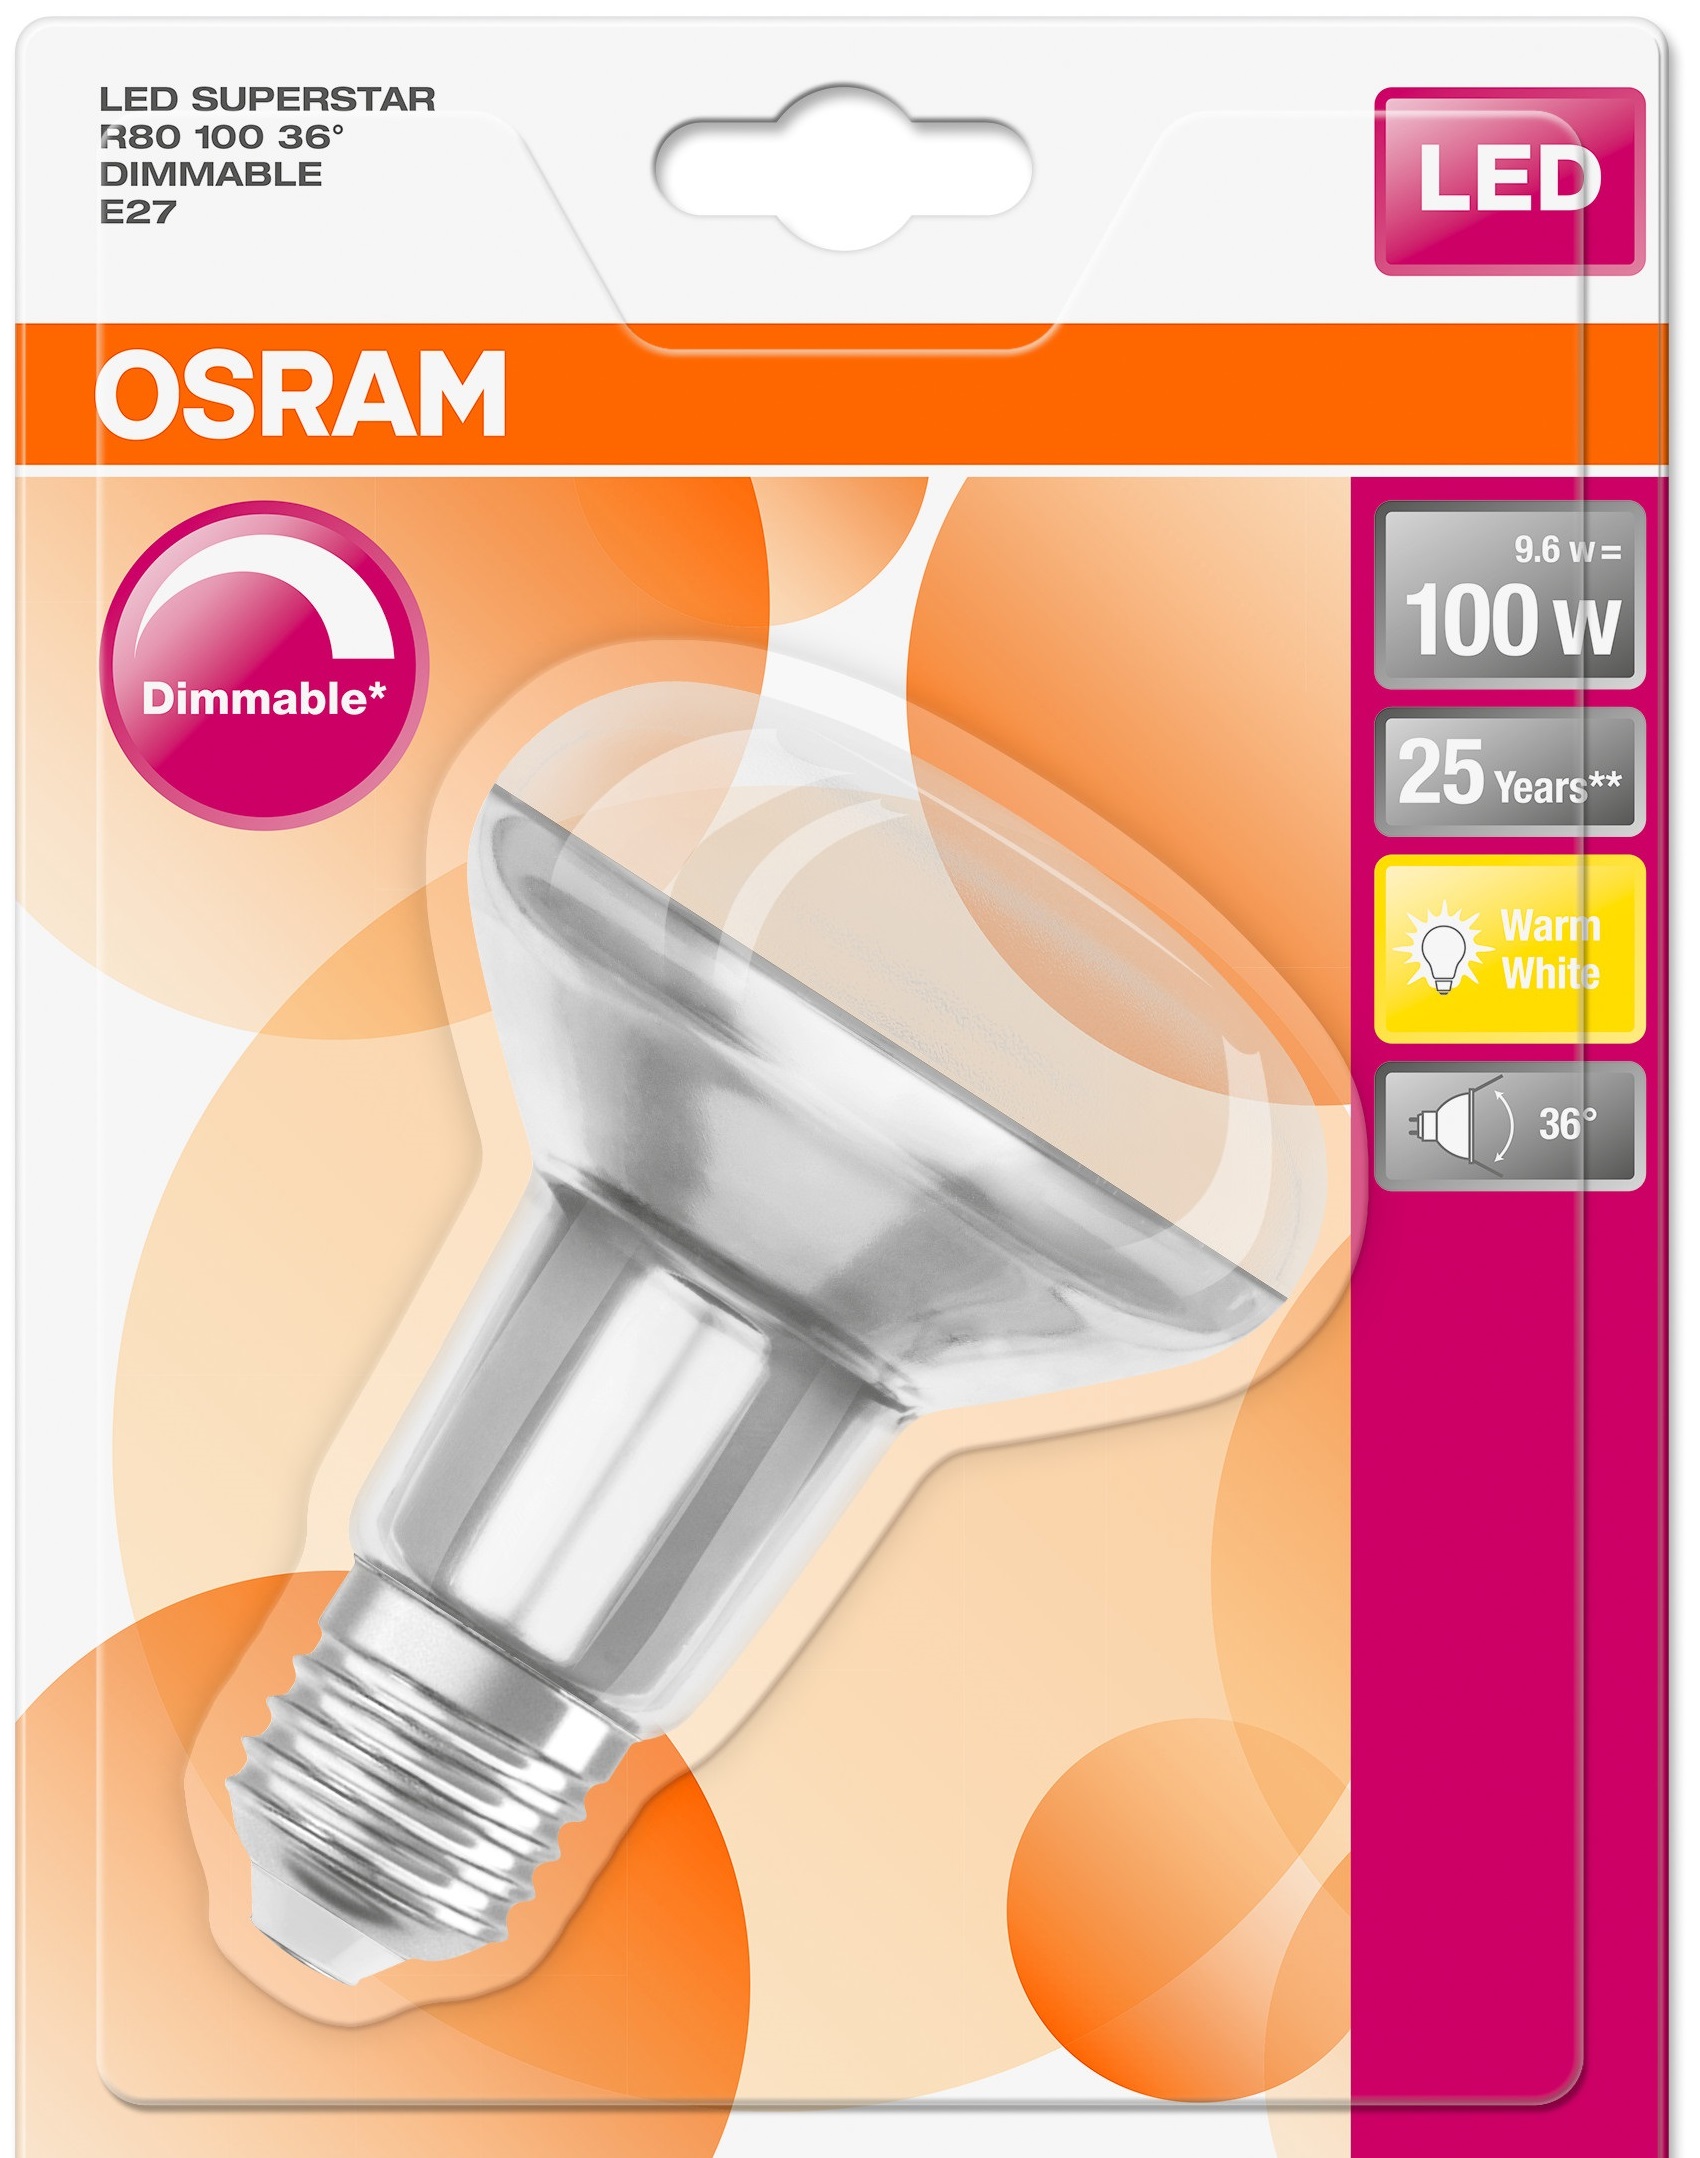 Лампа OSRAM SuperStar FIL LED DIM R80 Е27 9,6W 670Lm 2700K в Киеве